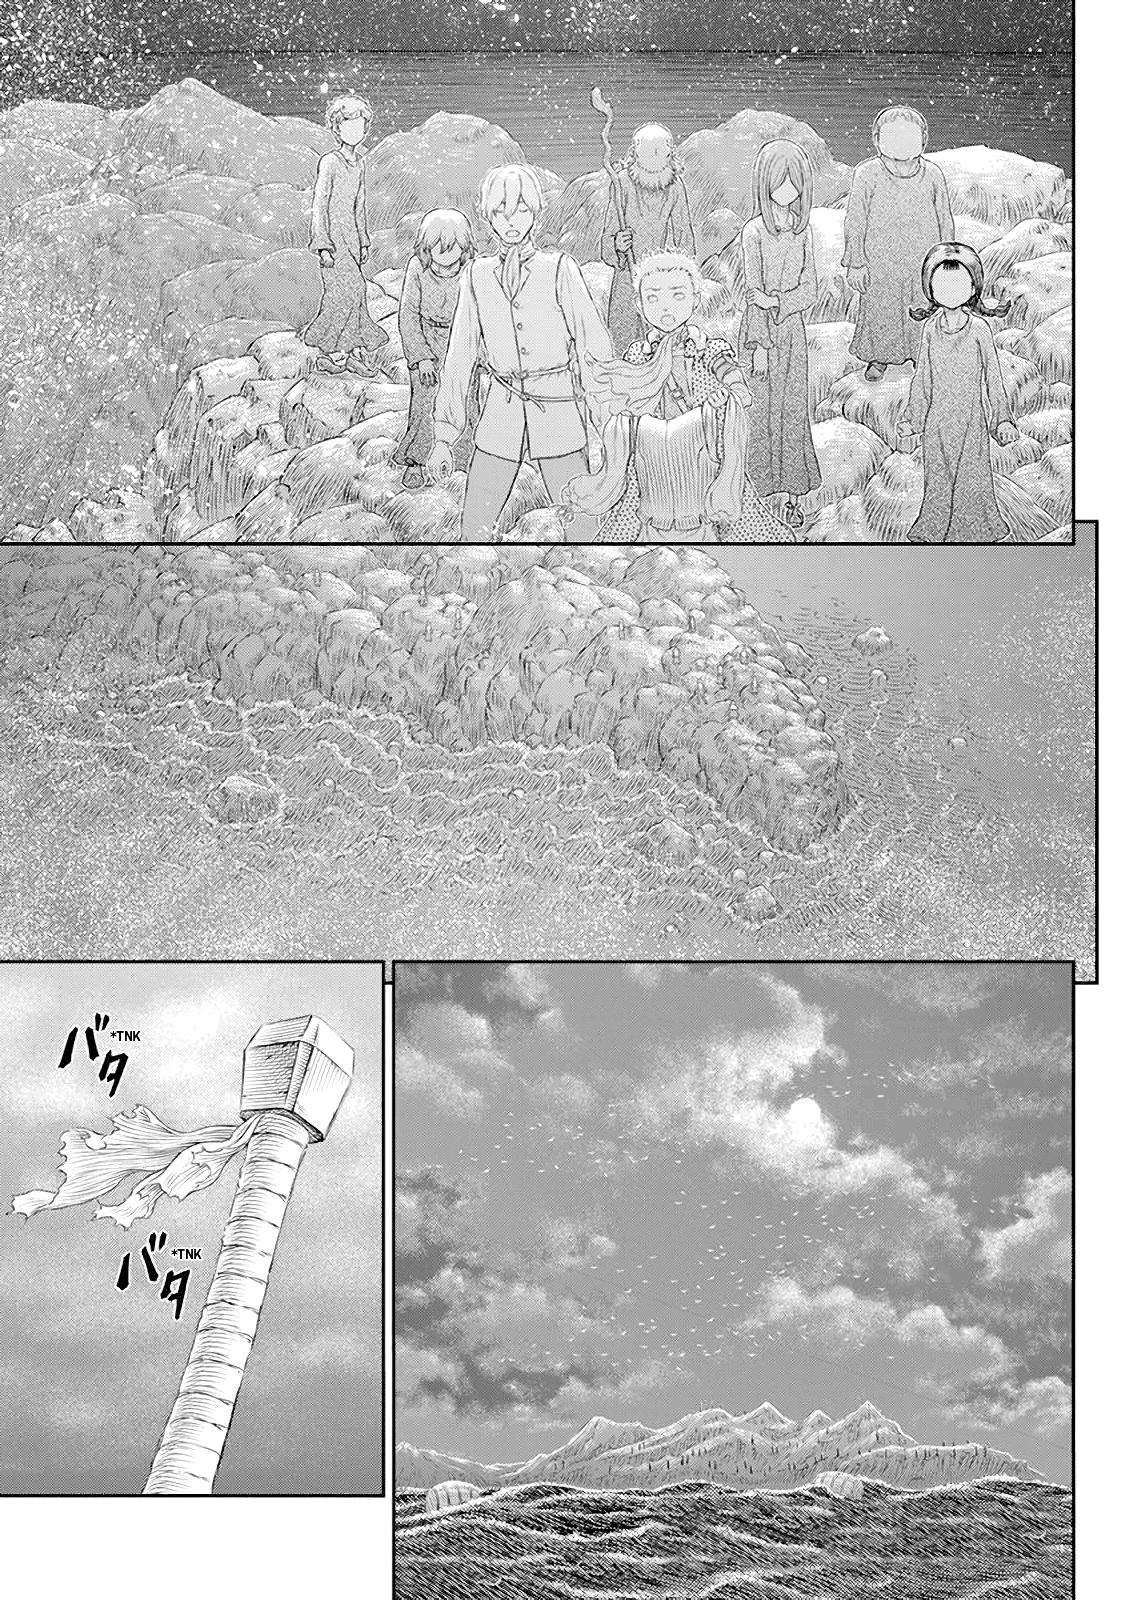 Berserk Manga Chapter 369 image 14